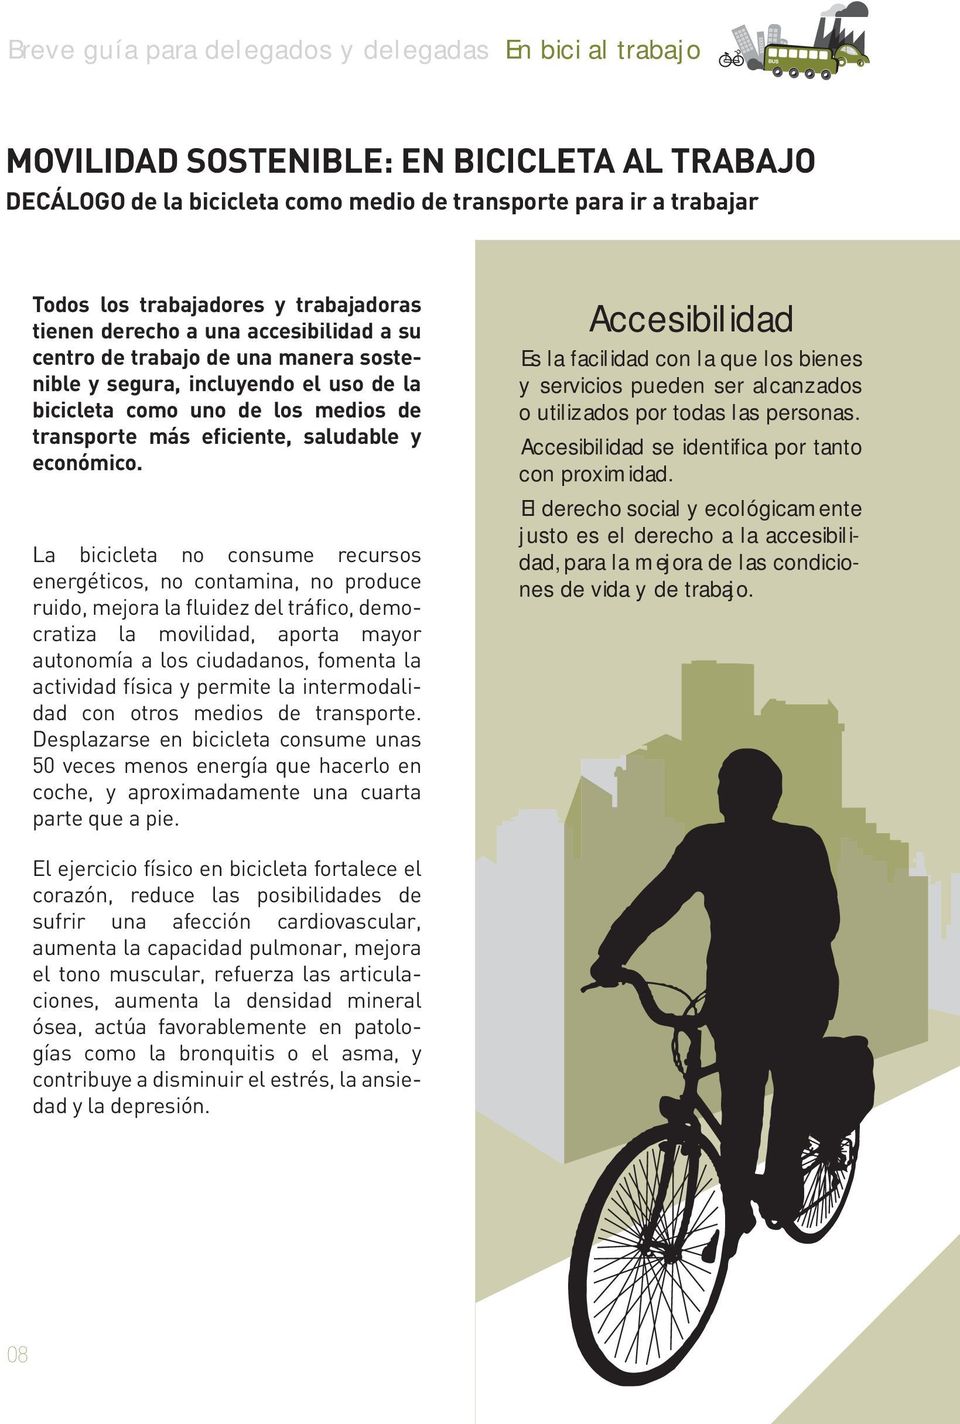 La bicicleta no consume recursos energéticos, no contamina, no produce ruido, mejora la fluidez del tráfico, democratiza la movilidad, aporta mayor autonomía a los ciudadanos, fomenta la actividad